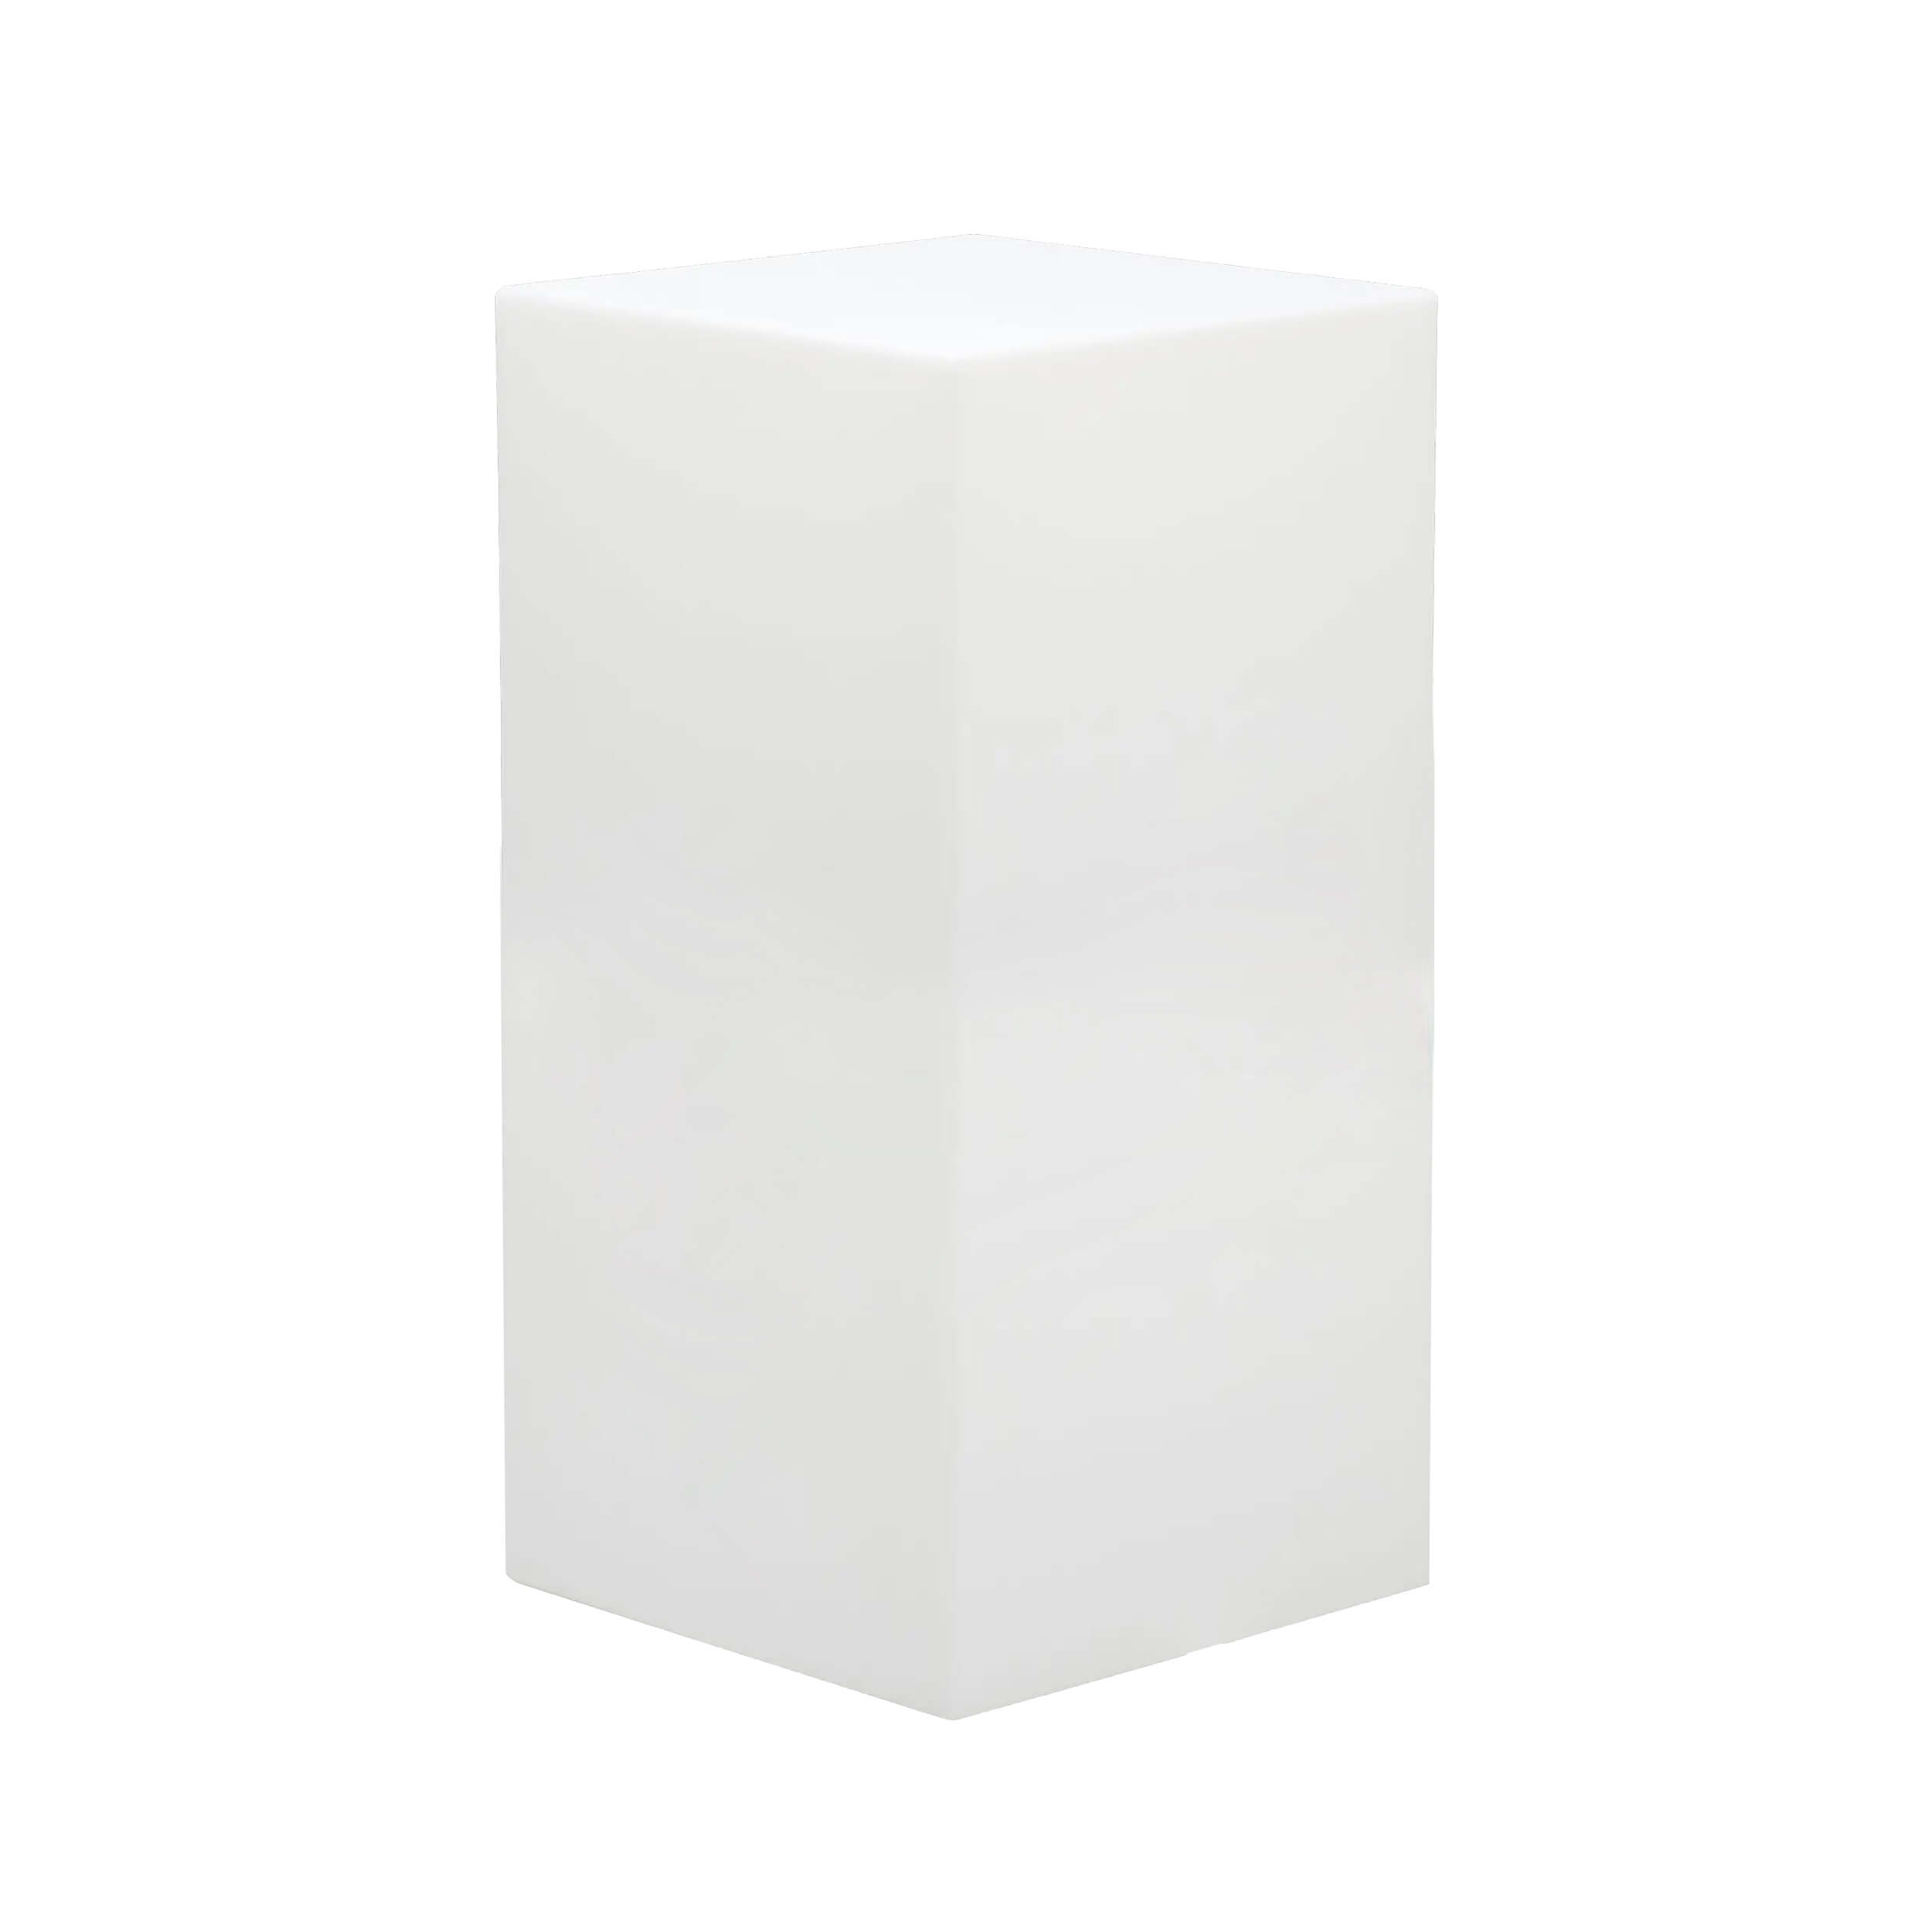 Milani Home cubo luminoso per esterno giardino con luce bianca cm 40 x 40 x 80 h Bianco 40 x 80 x 40 cm